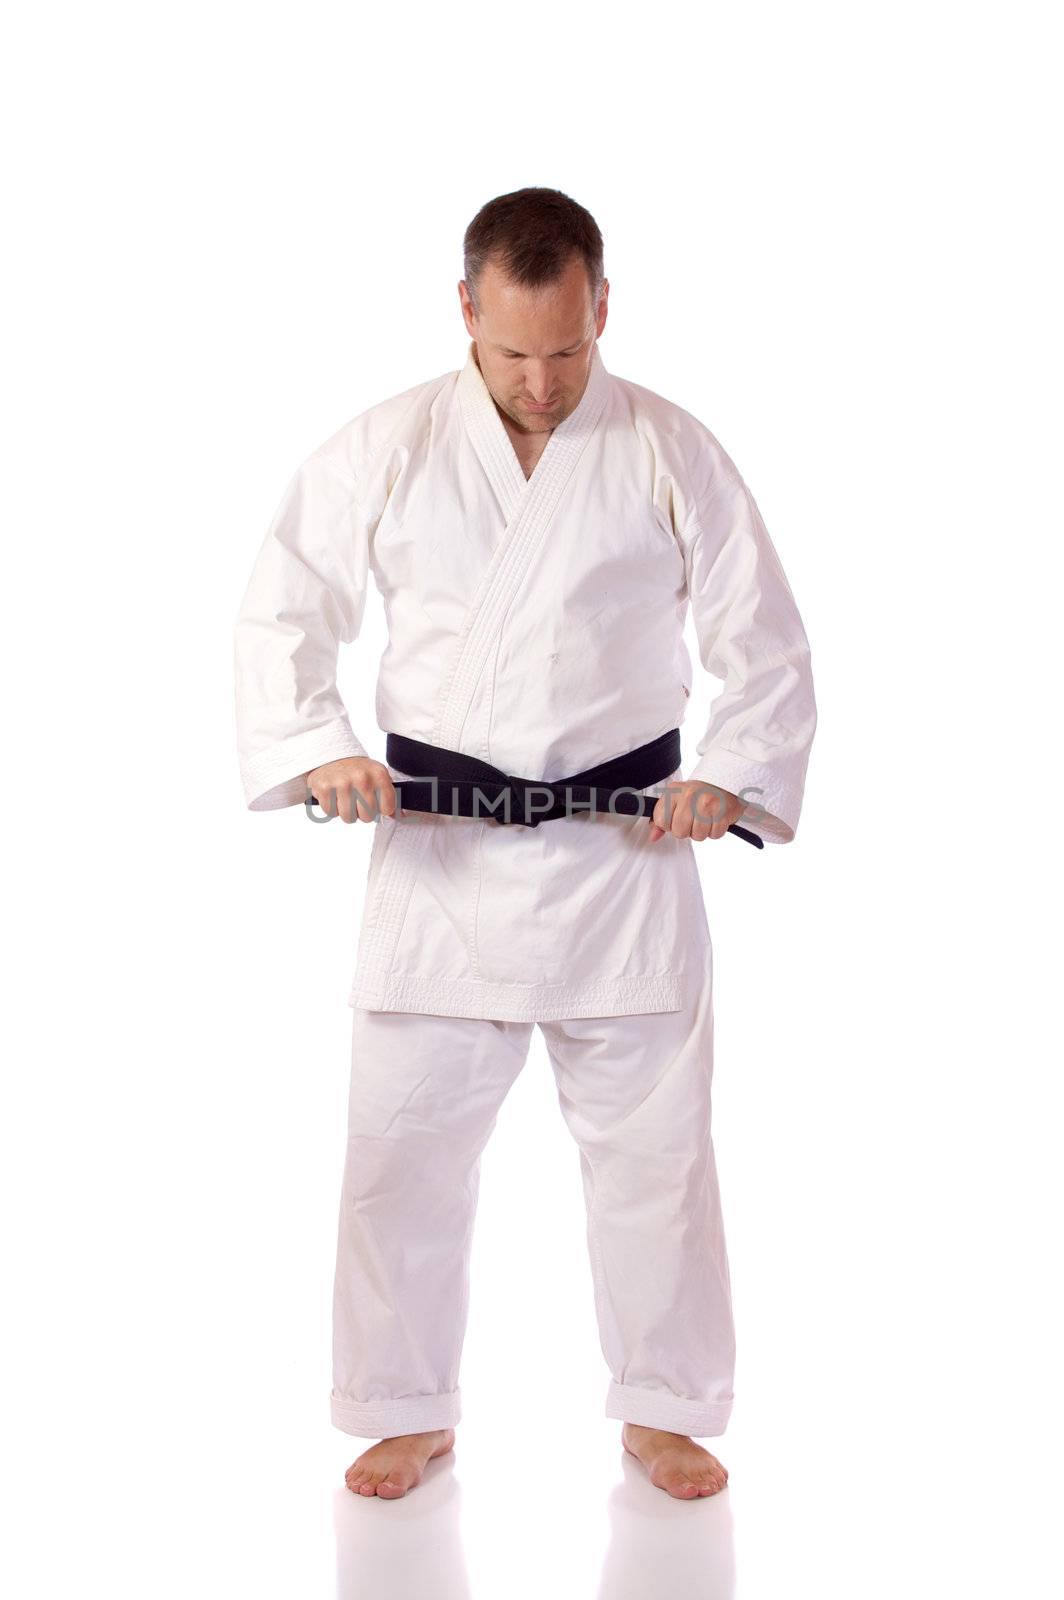 Karateka fastening his belt by Talanis